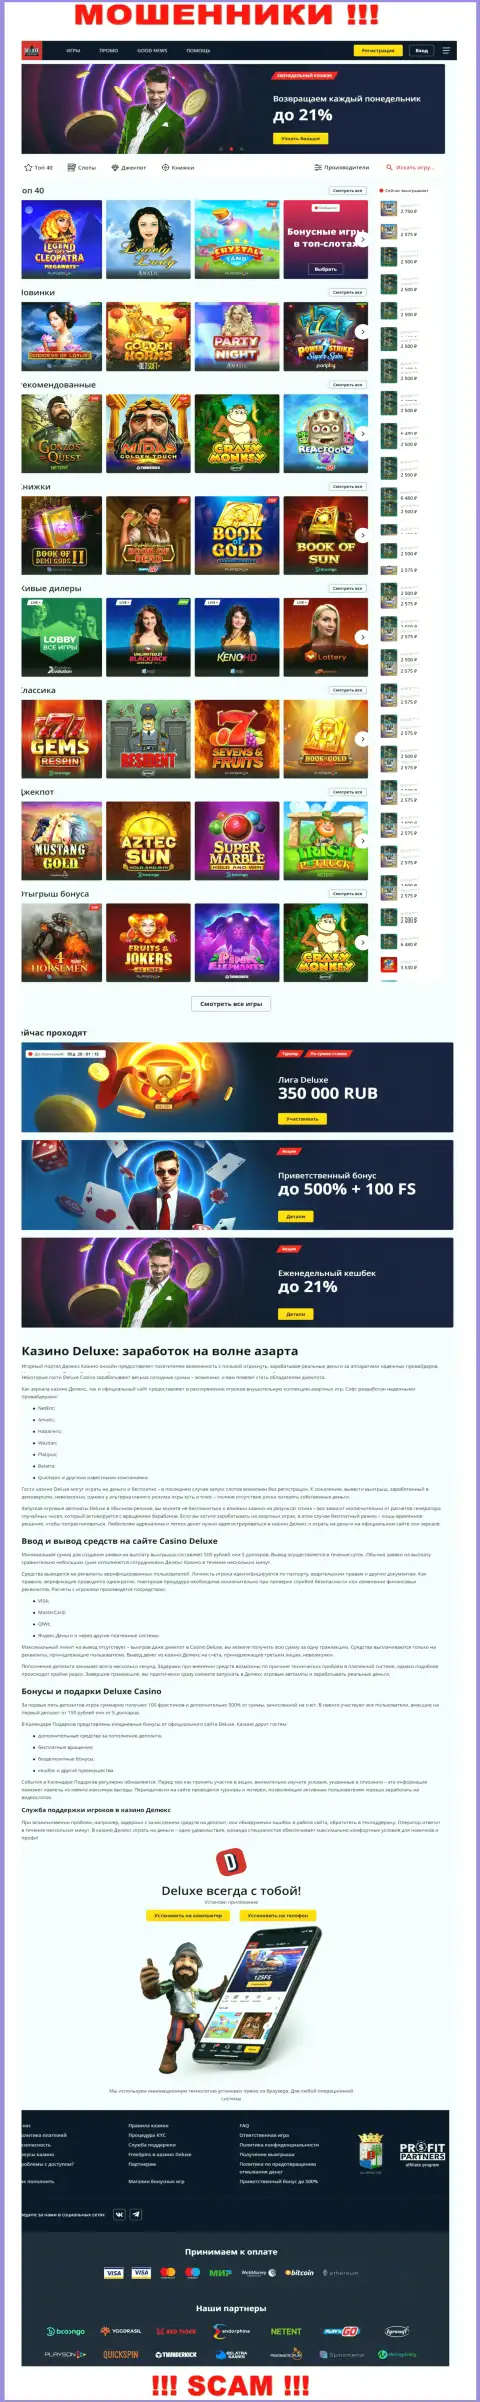 Официальная online-страница конторы Deluxe Casino